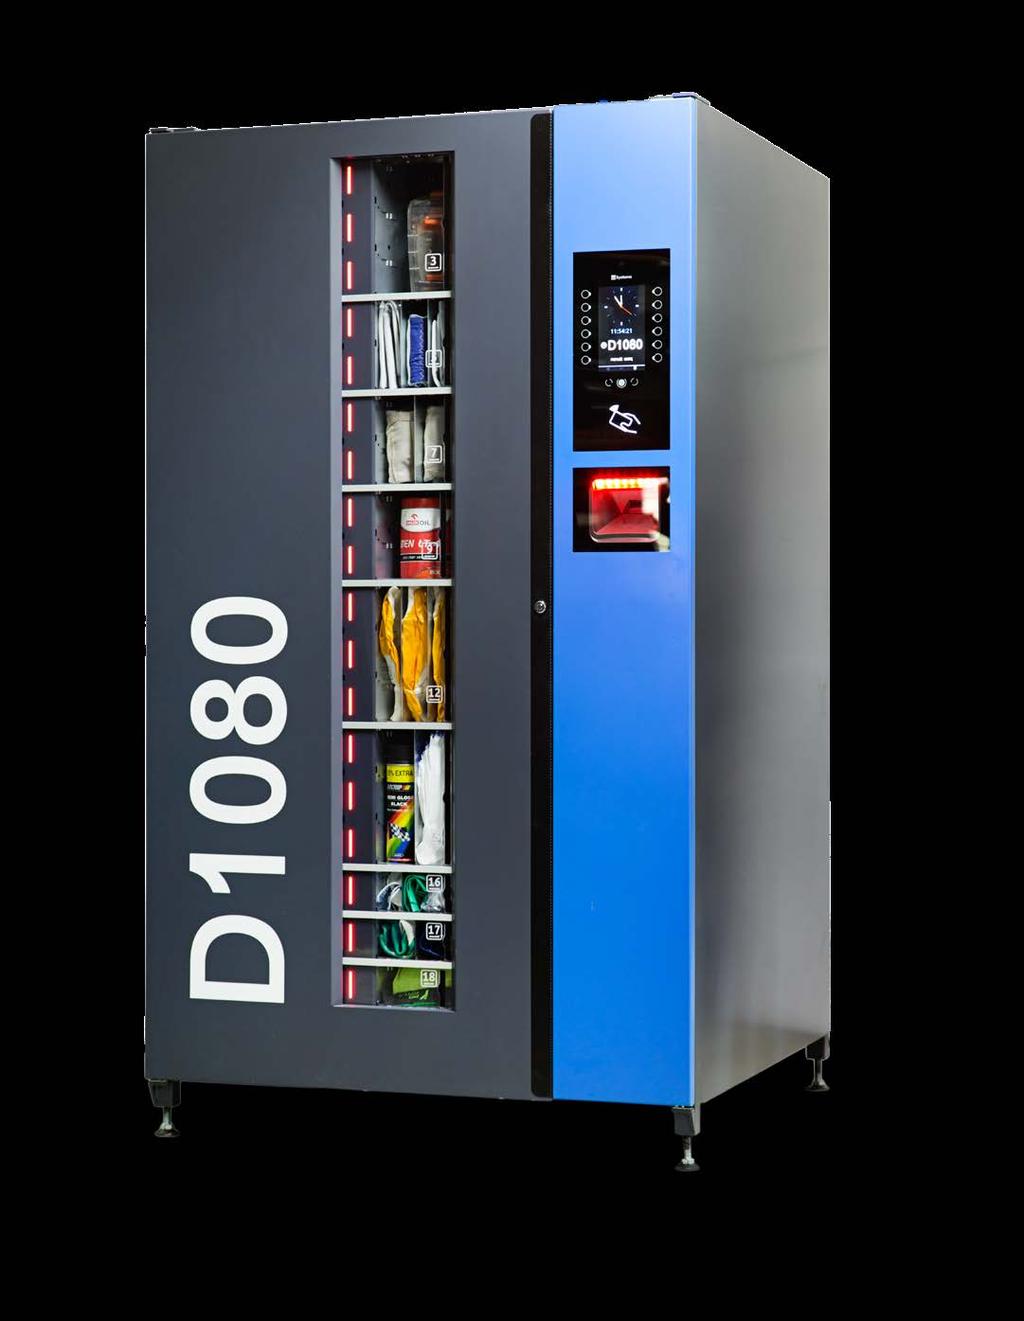 AUTOMAT WYDAJĄCY D1080» AUTOMAT WYDAJĄCY WSZECHSTRONNEGO ZASTOSOWANIA Automat D1080 jest samoobsługową maszyną, automatycznie wydającą do 1080 różnych produktów.